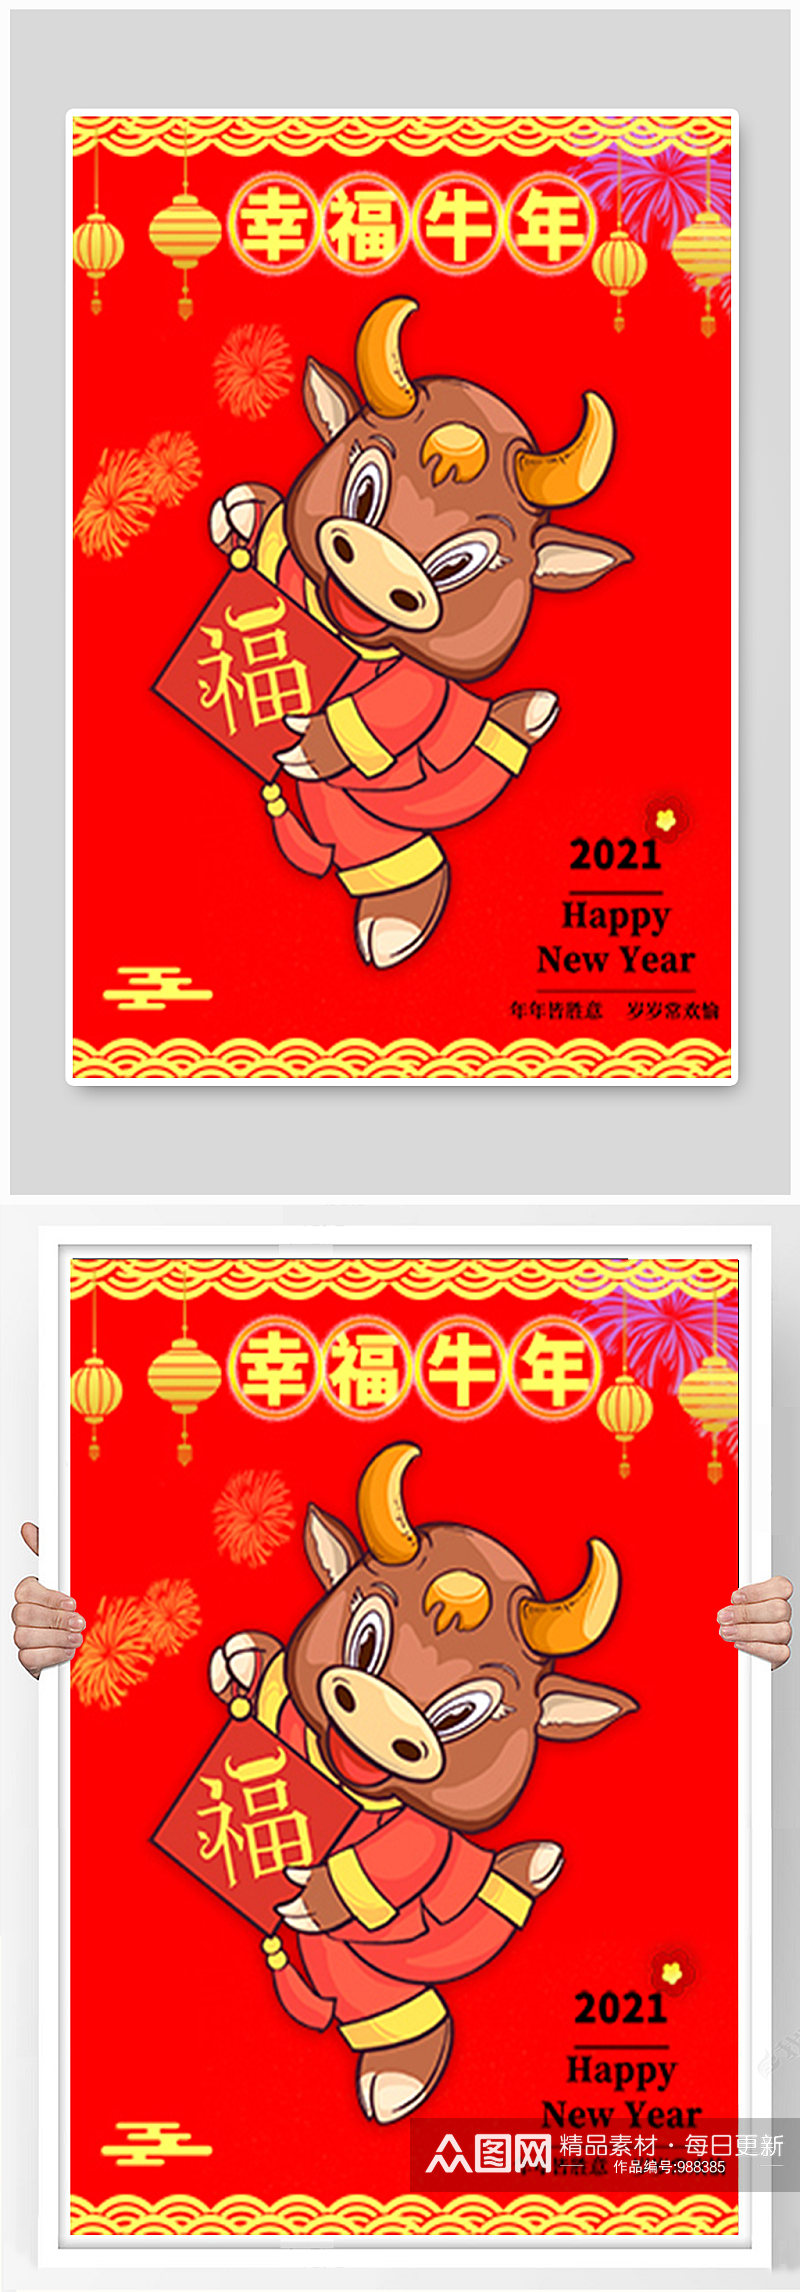 红色喜庆幸福牛年2021年新年春节海报素材